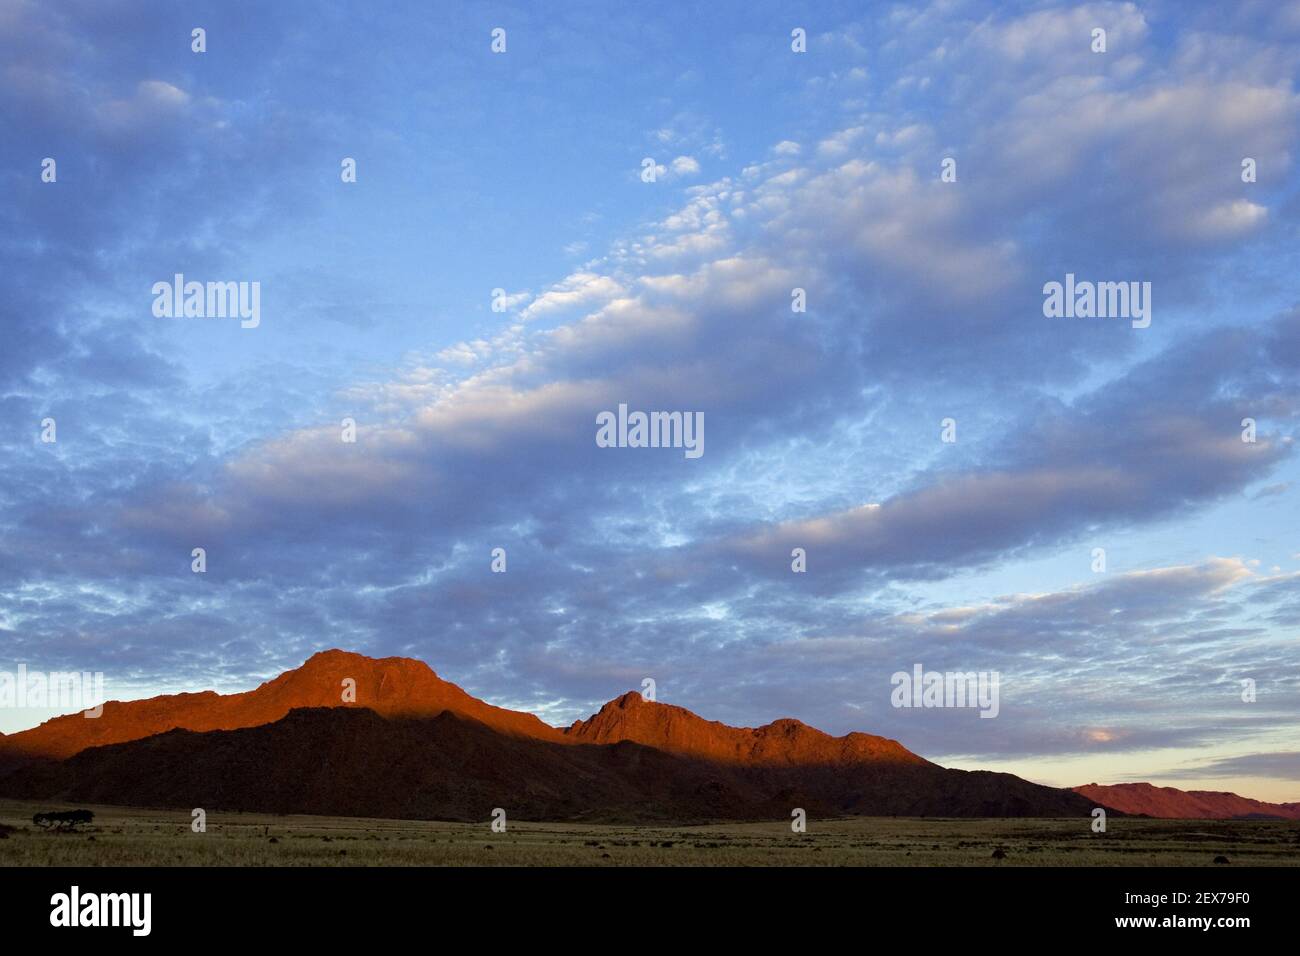 Sonnenaufgang, Tirasberge, Namibia, Afrika, sunrise, Tiras Mountains, Africa Stock Photo